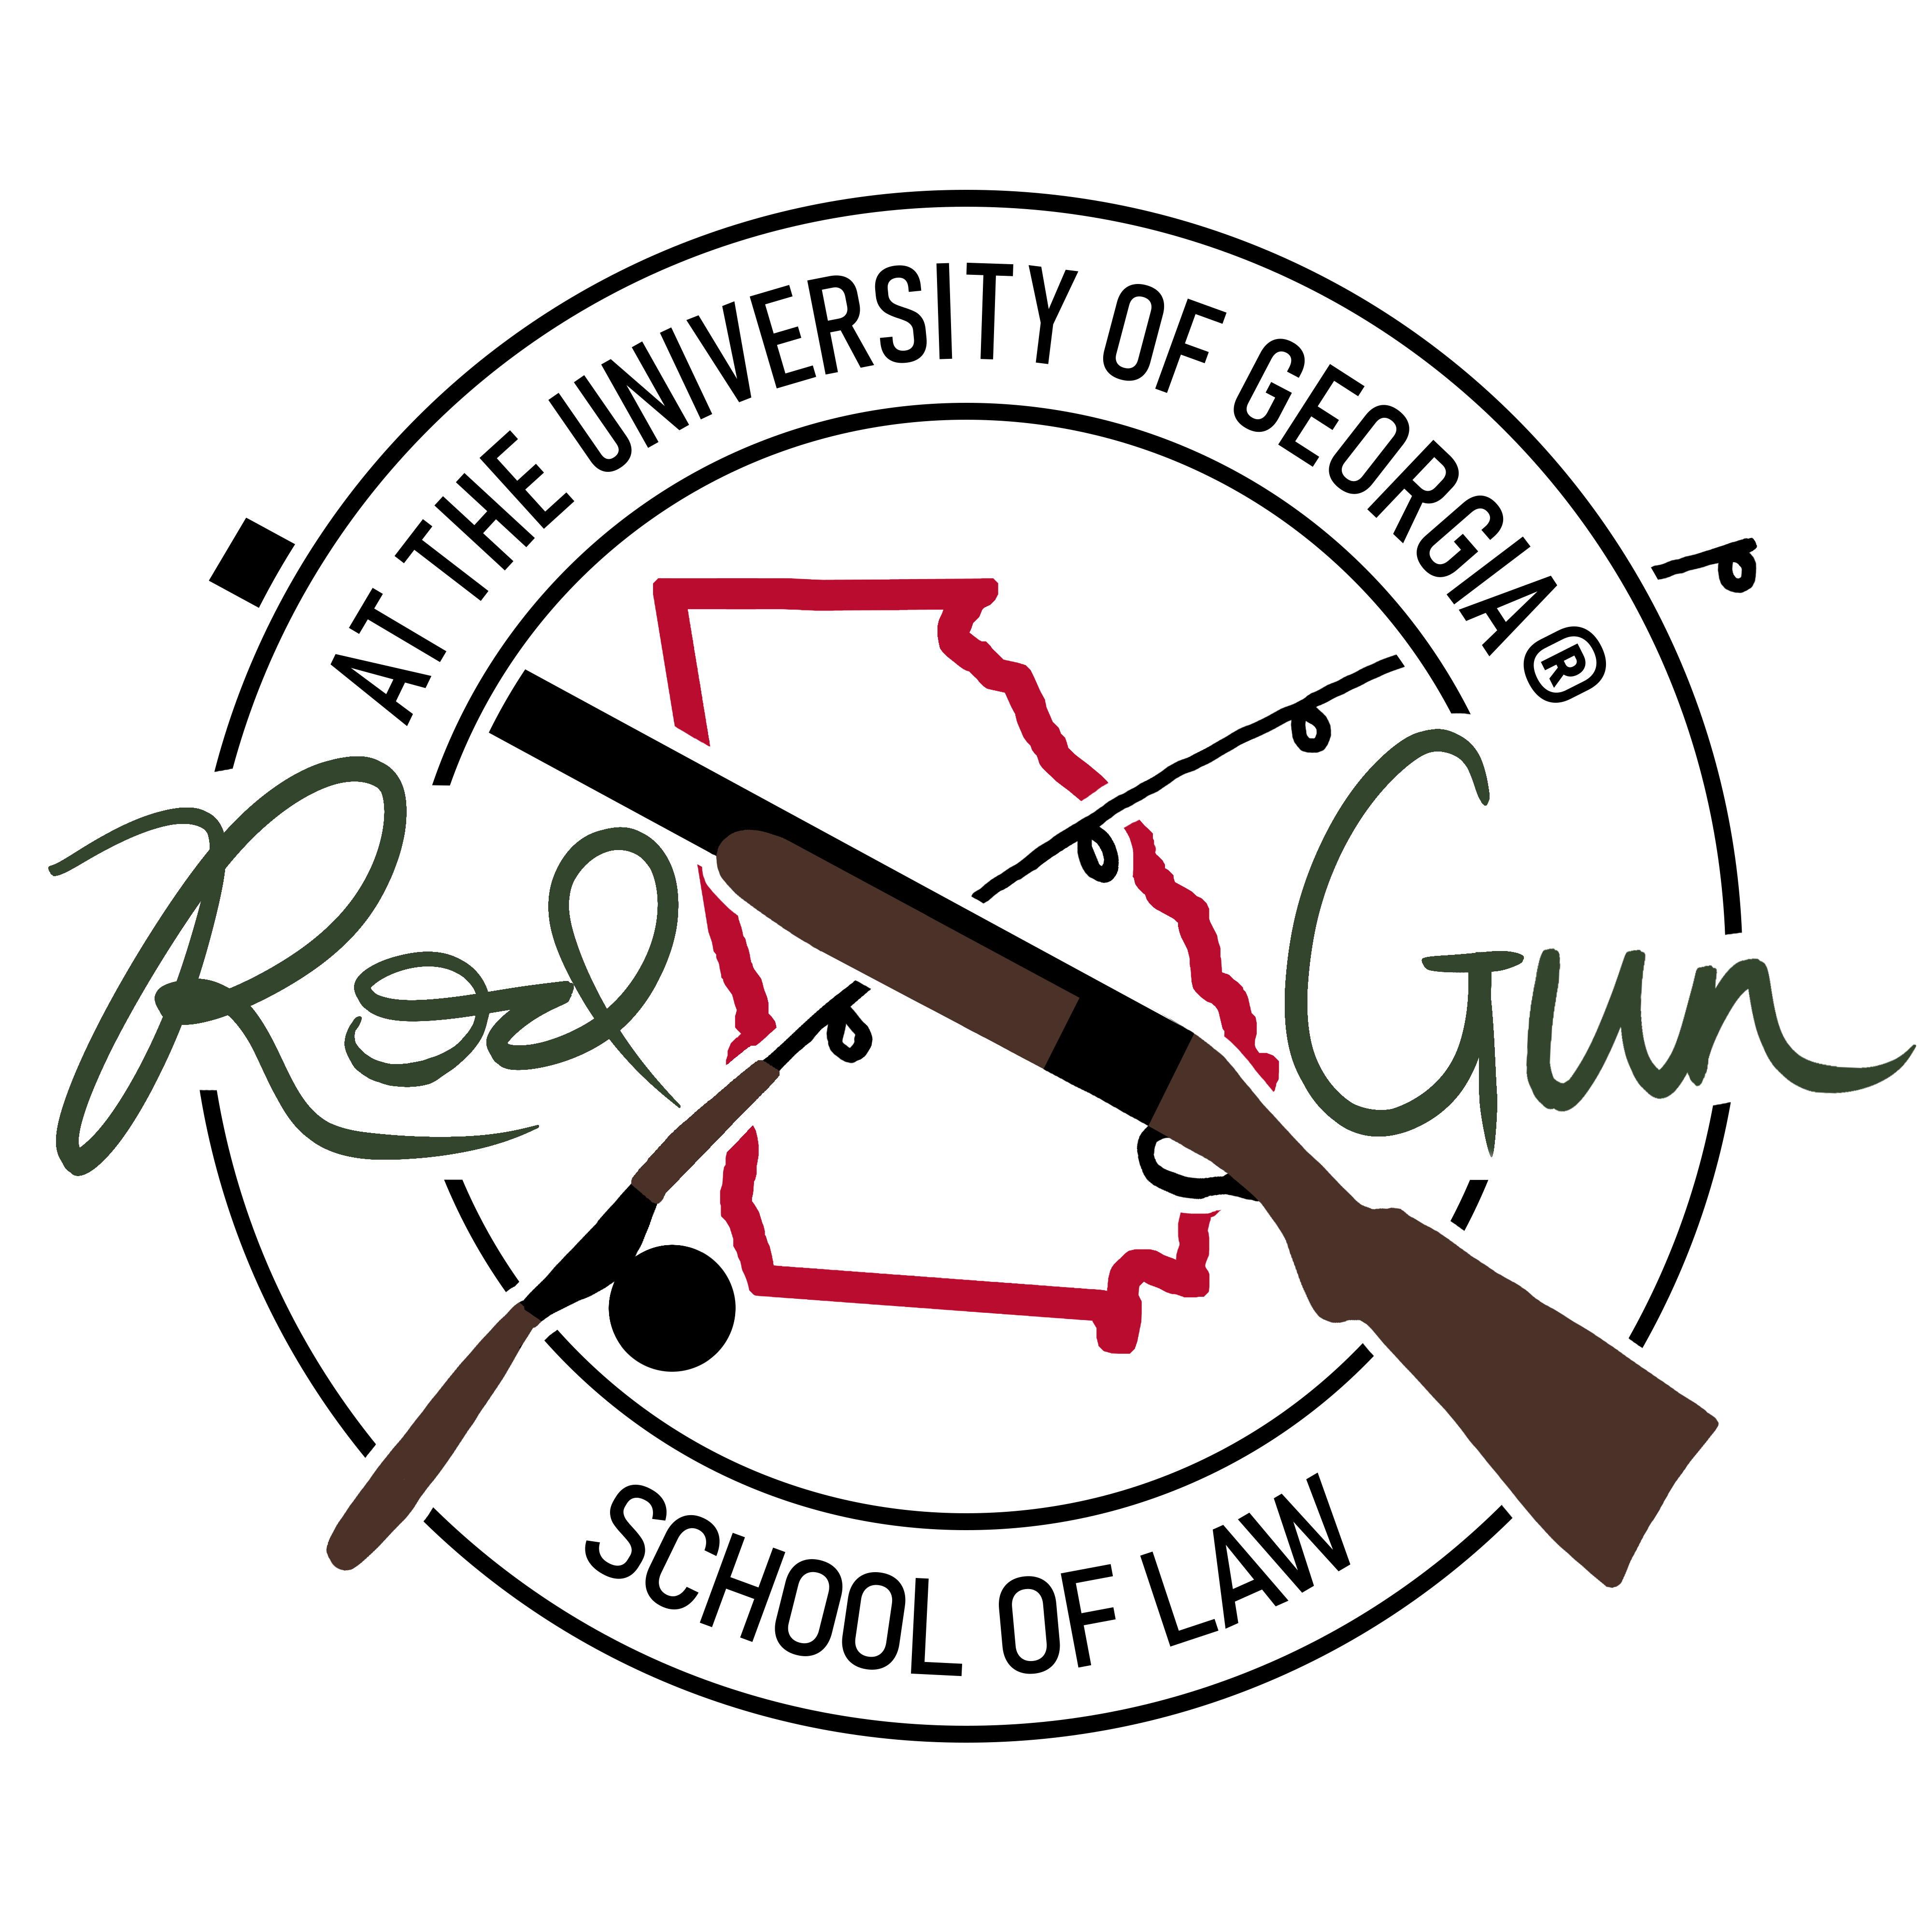 Rod and gun club logo